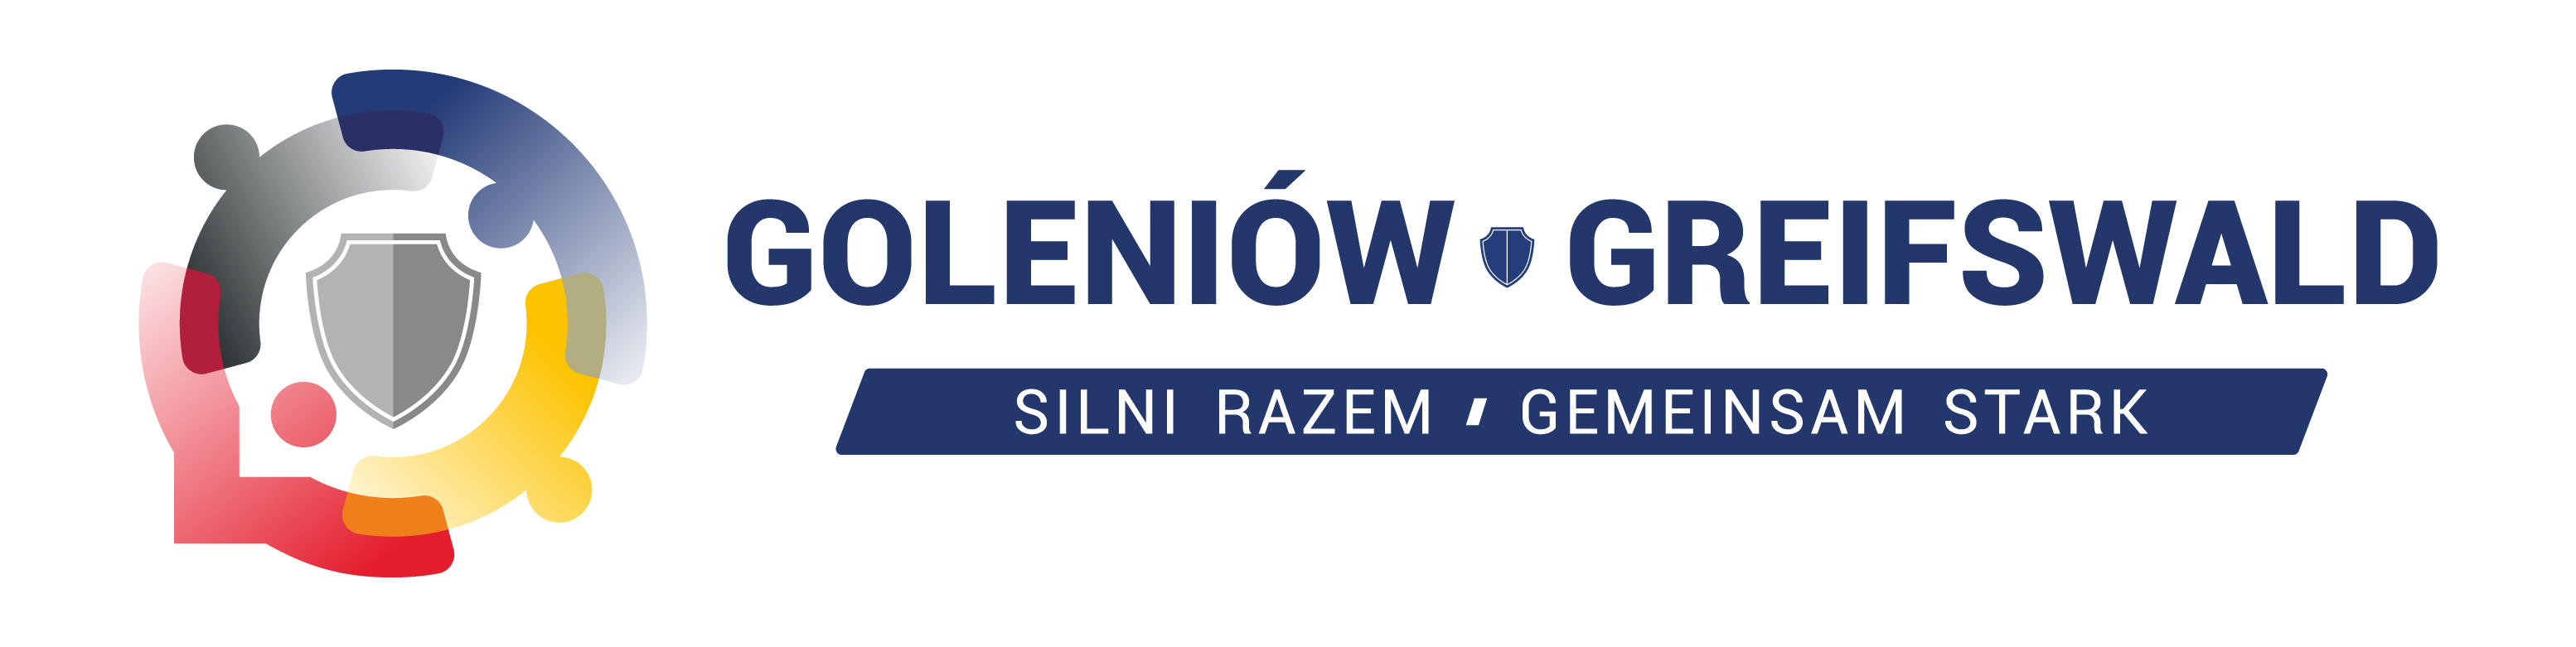 Logo Goleniów-Greifswald-Gemeinsam Stark